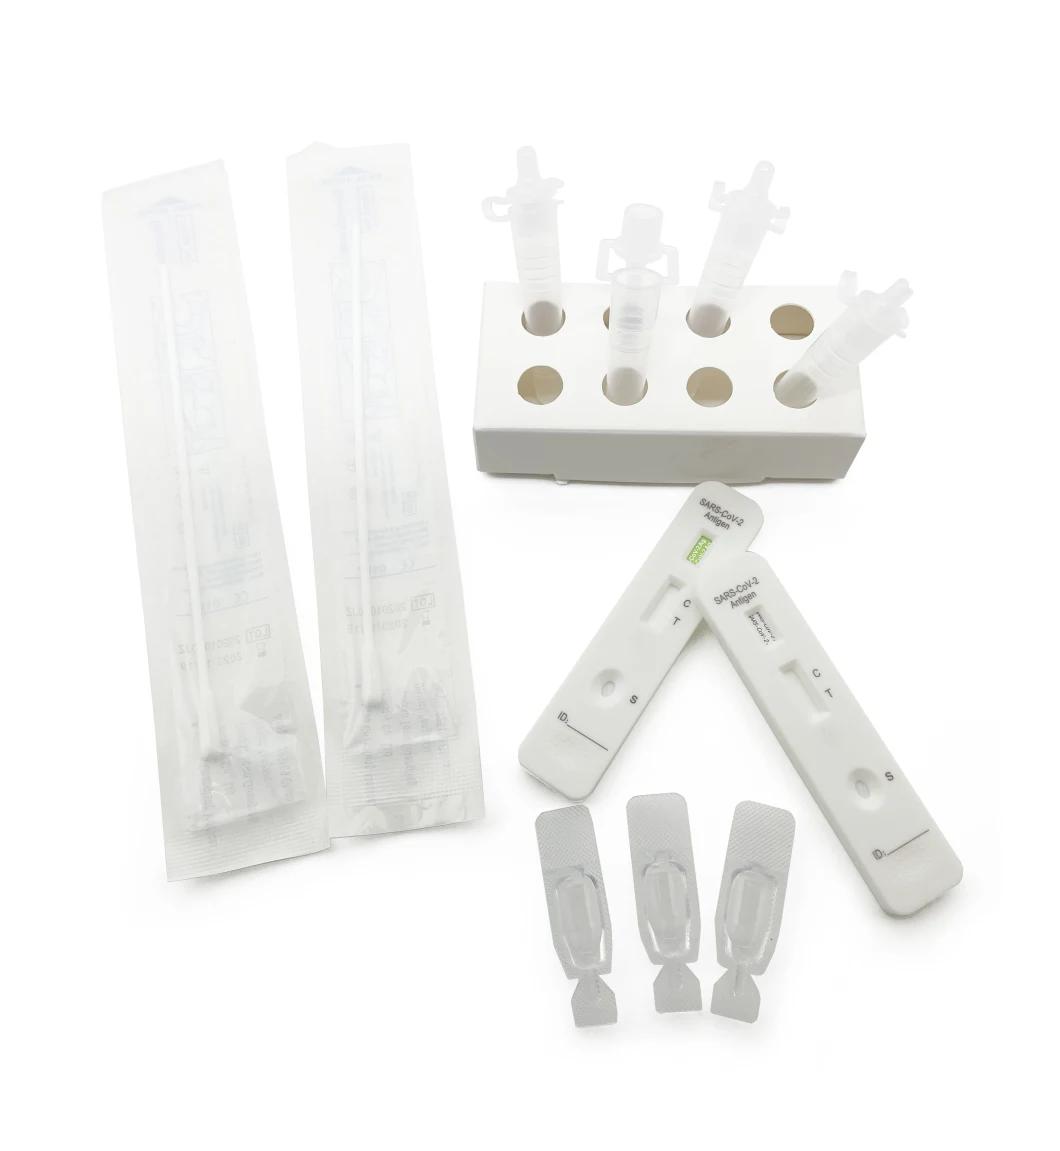 Rapid Reaction Antigen Rapid Diagnostic Kit Test for Nasal